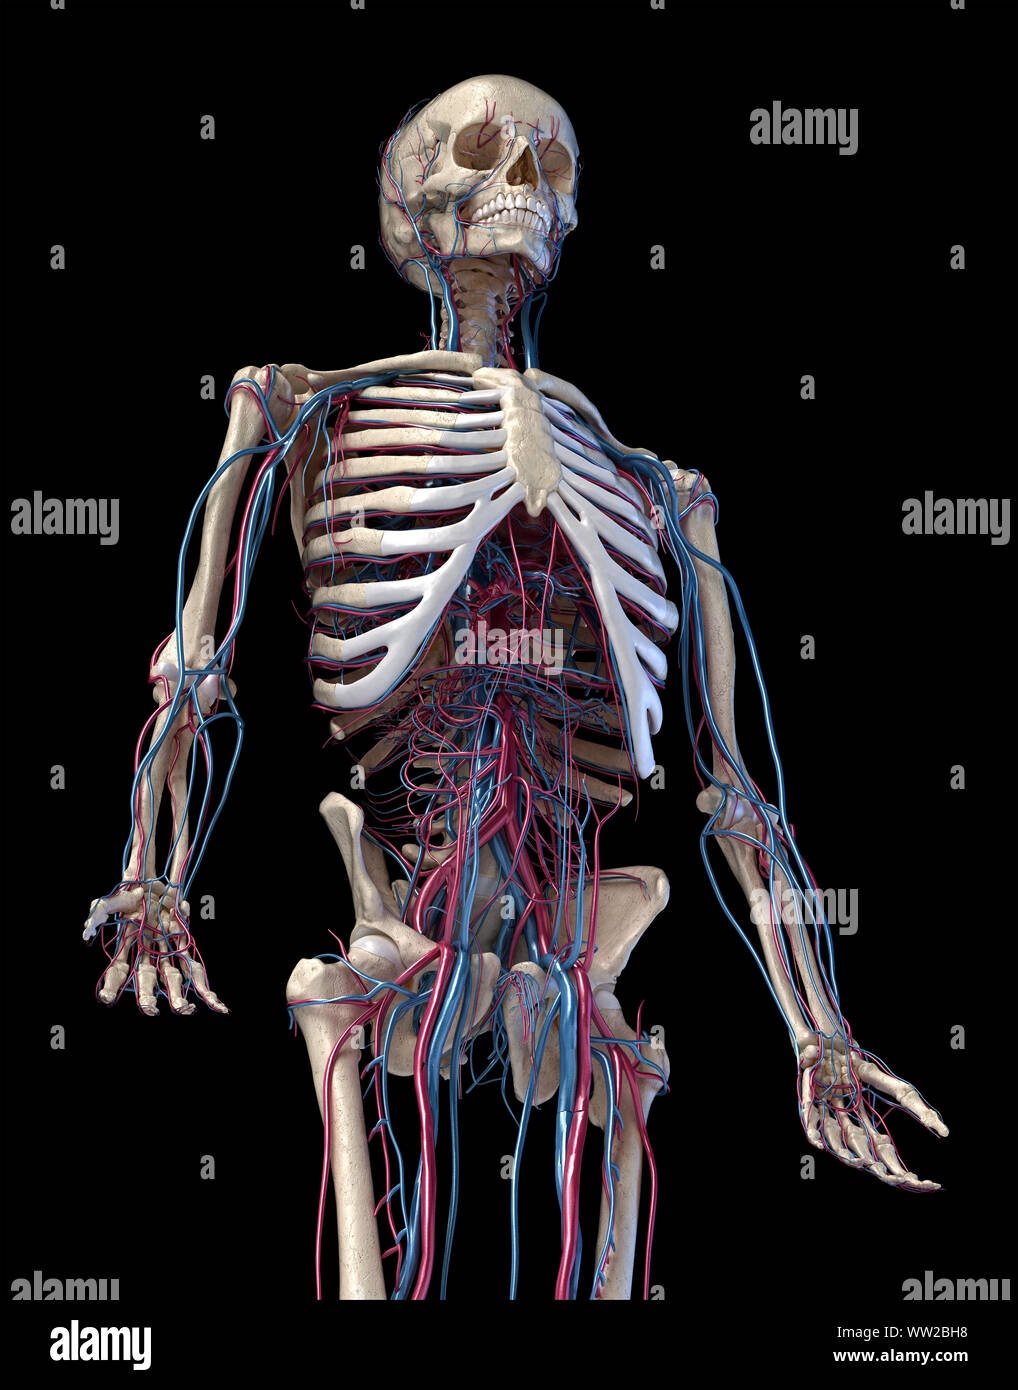 Der menschlichen Anatomie, 3D-Darstellung der Skelett mit Herz-Kreislauf-System. Perspektivische Ansicht von 3/4 oberen Teil der Vorderseite. Auf schwarzem Hintergrund. Stockfoto